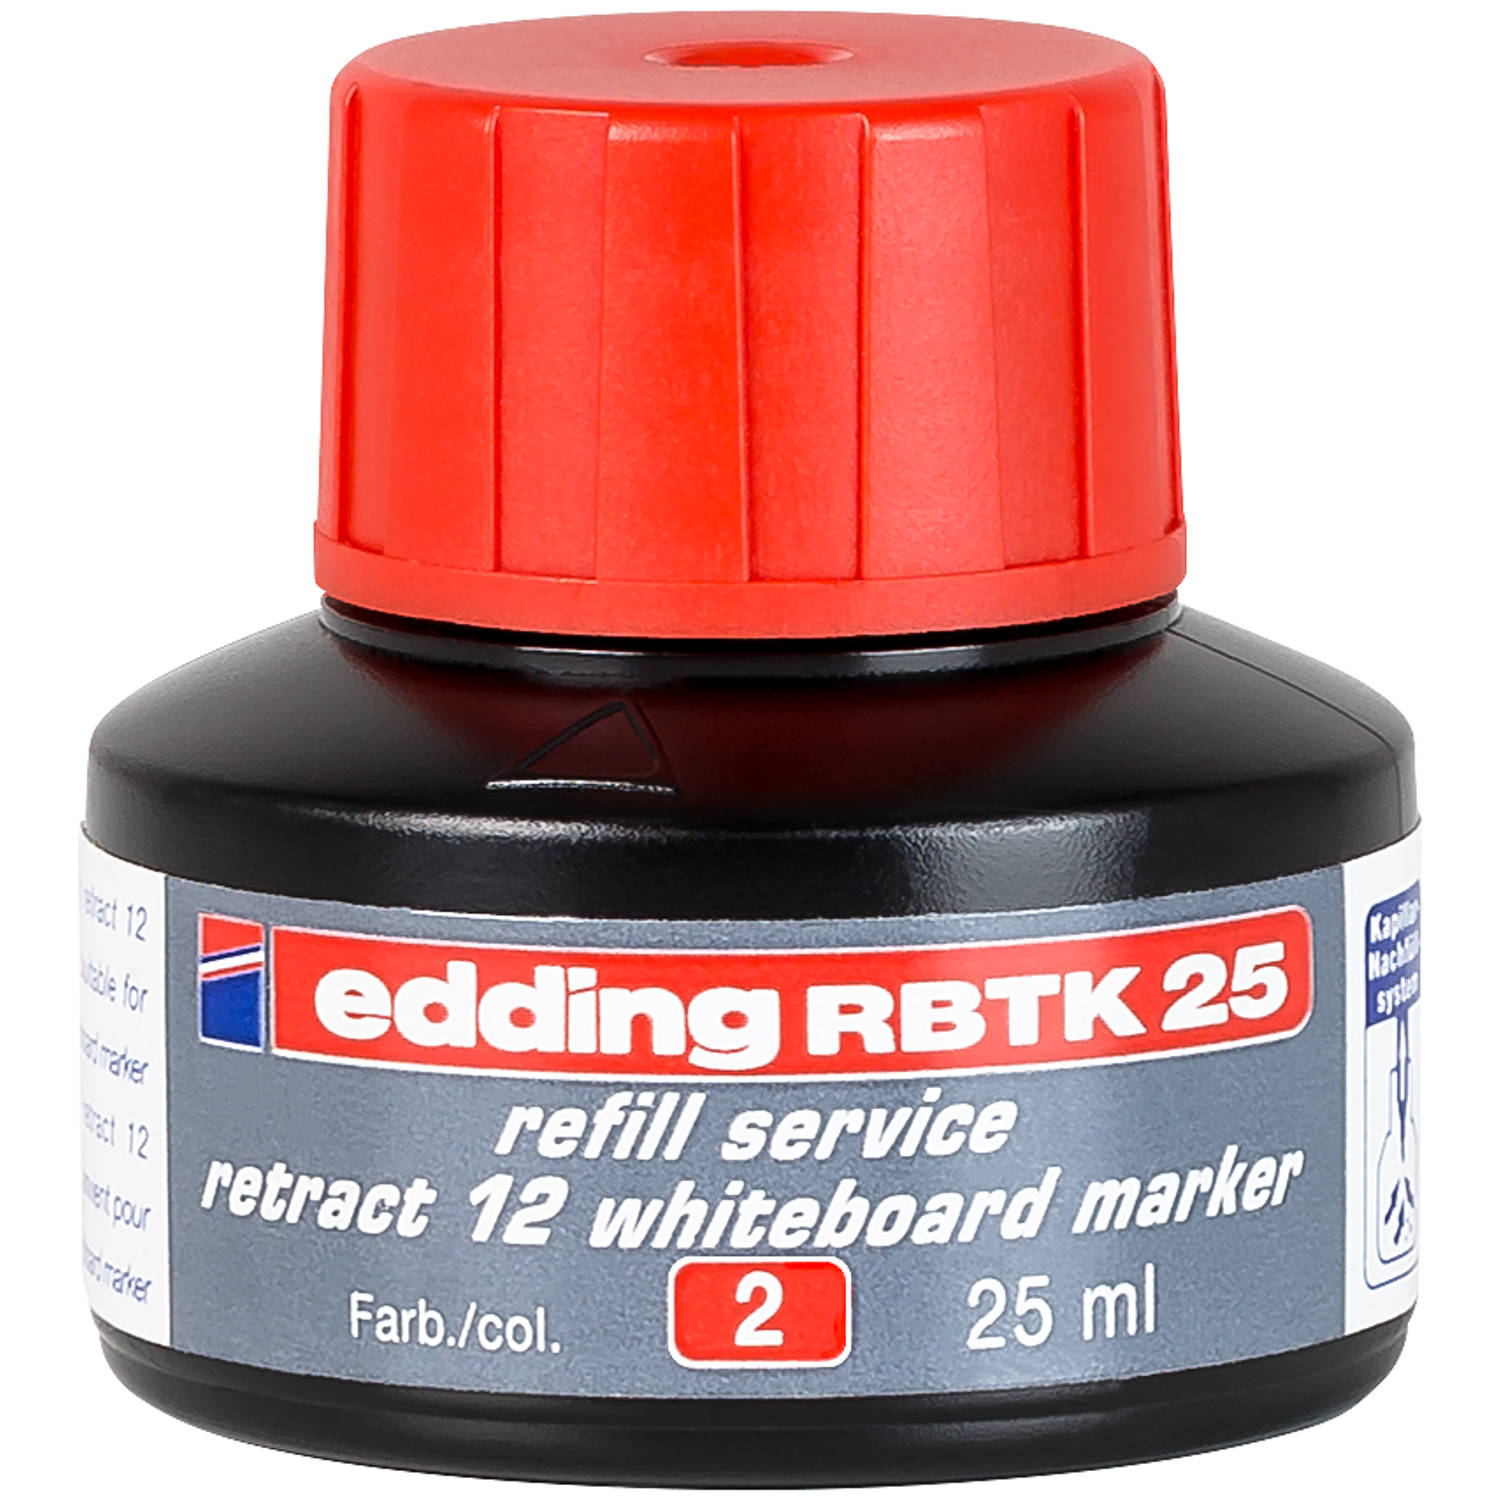 edding RBTK 25 (25 ml) navulinkt voor boardmarkers o.a. e-12 kleur; rood potje